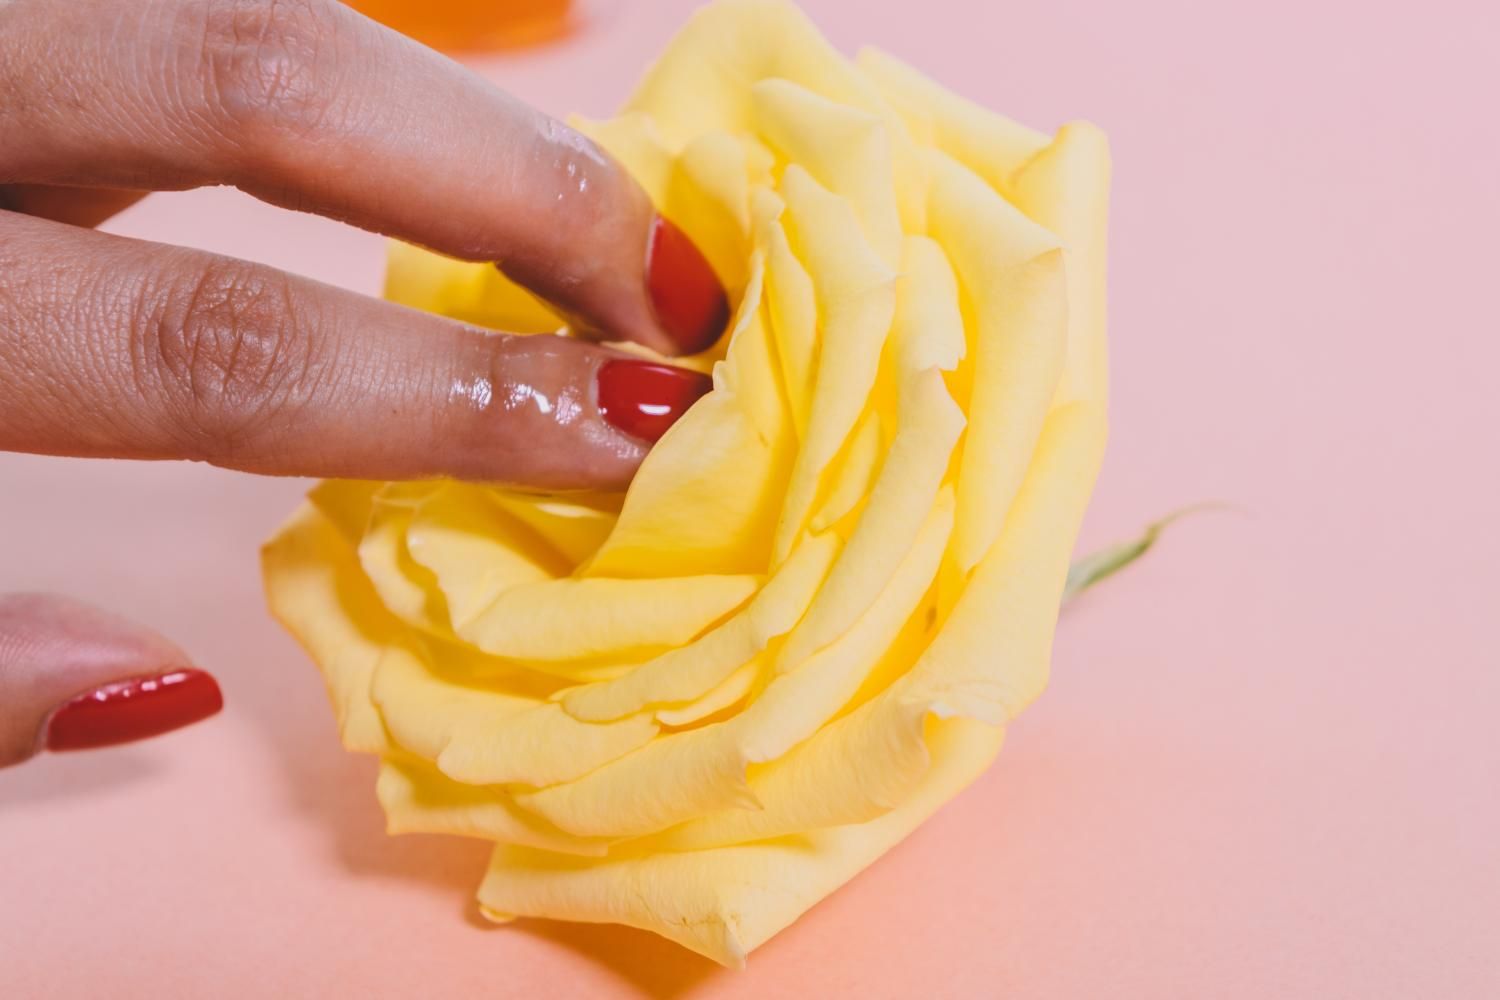 Mujer con dos dedos lubricados entrando en una rosa.